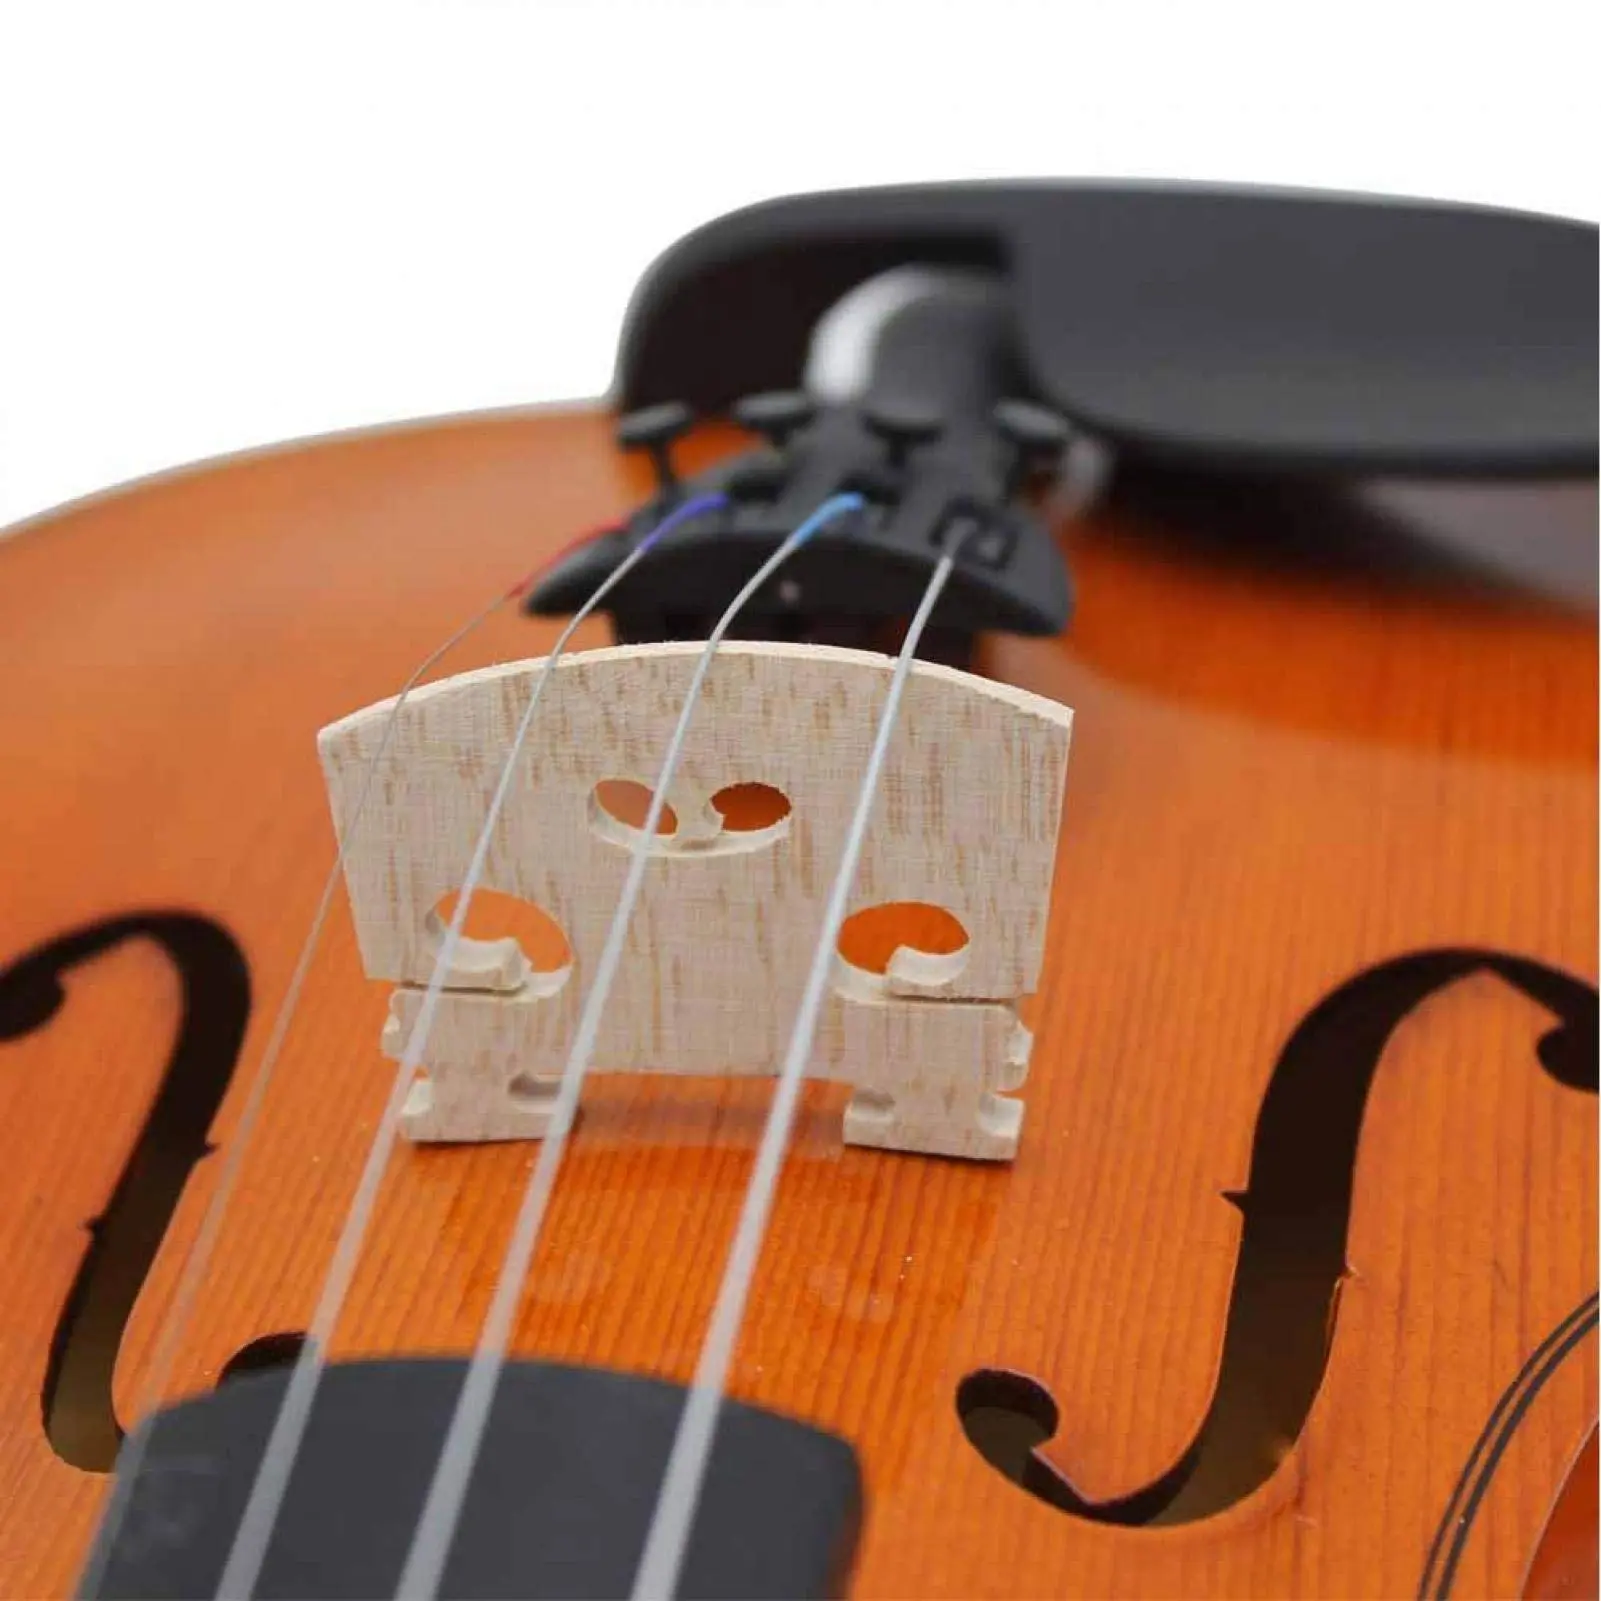 puente violin - Cómo se coloca el puente del violín